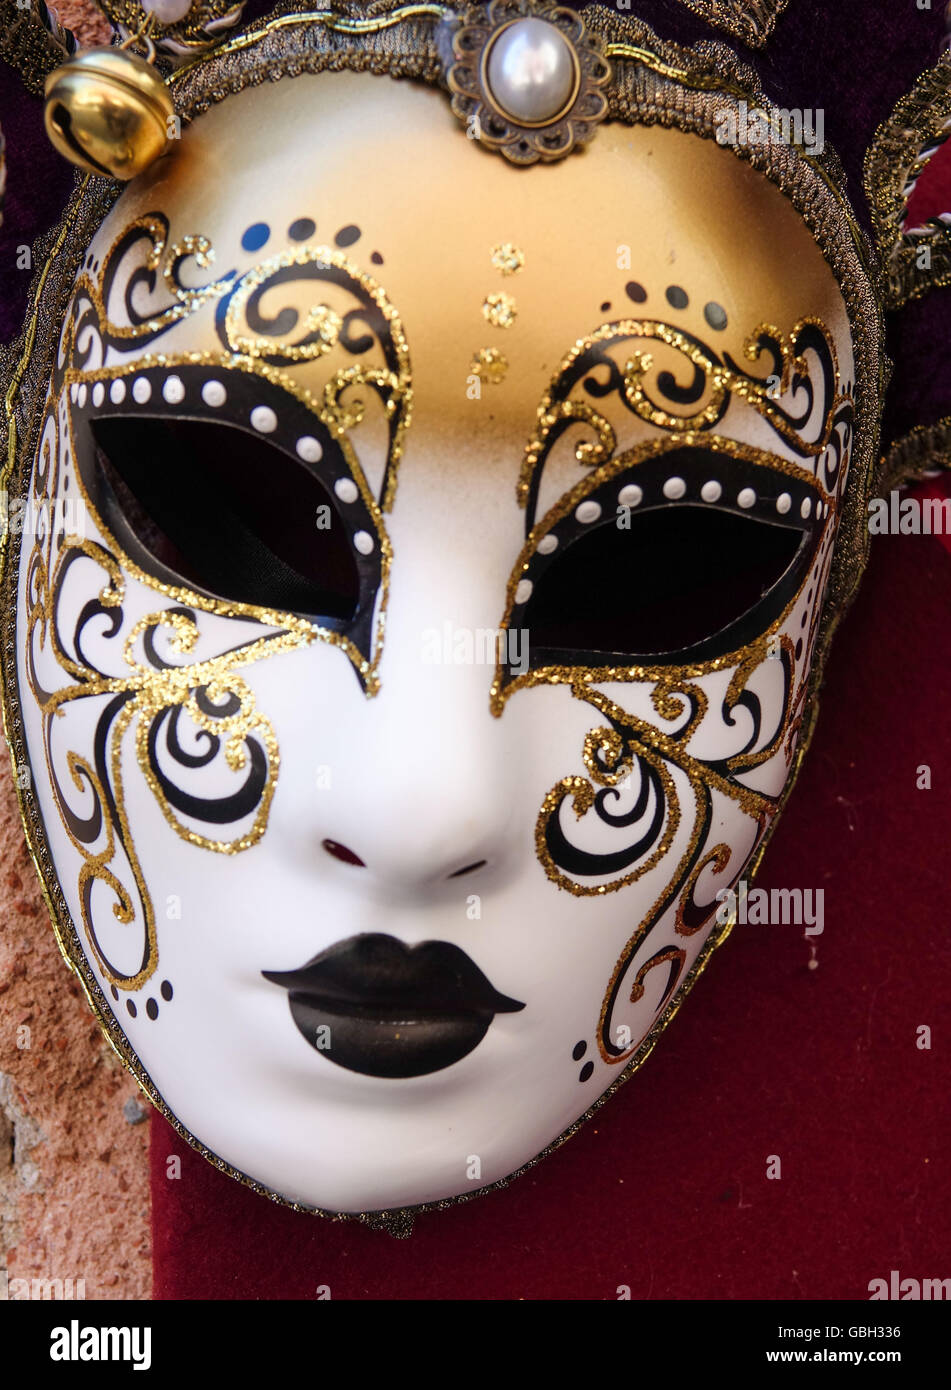 Venetian - carnival in Mardi Gras Stock Photo - Alamy